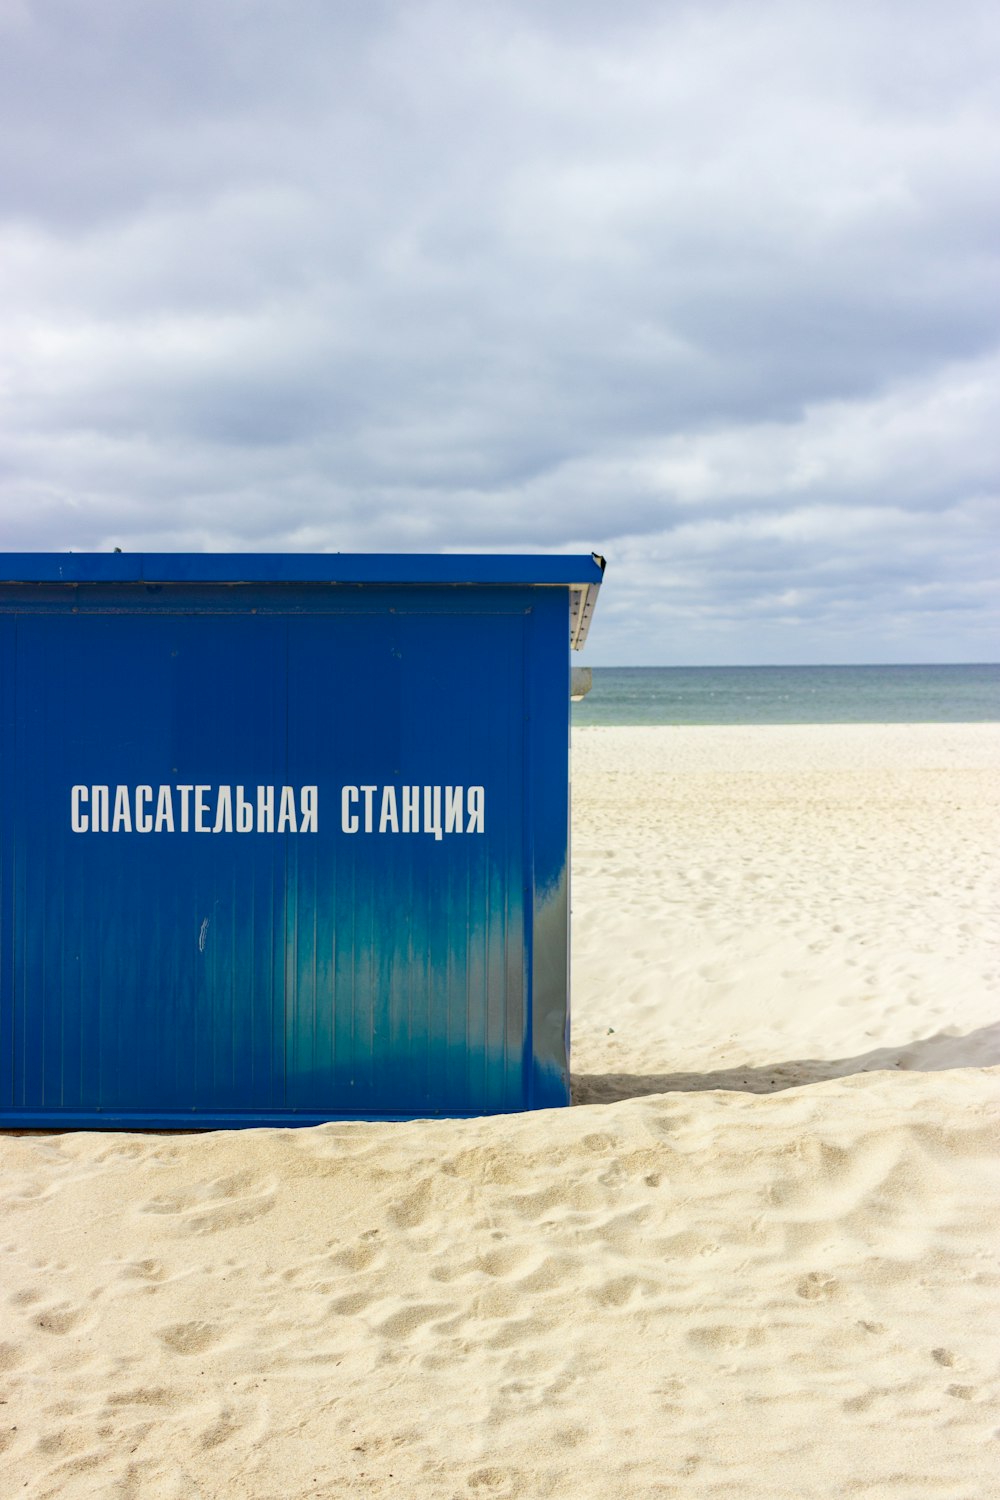 Una scatola blu seduta sulla cima di una spiaggia sabbiosa